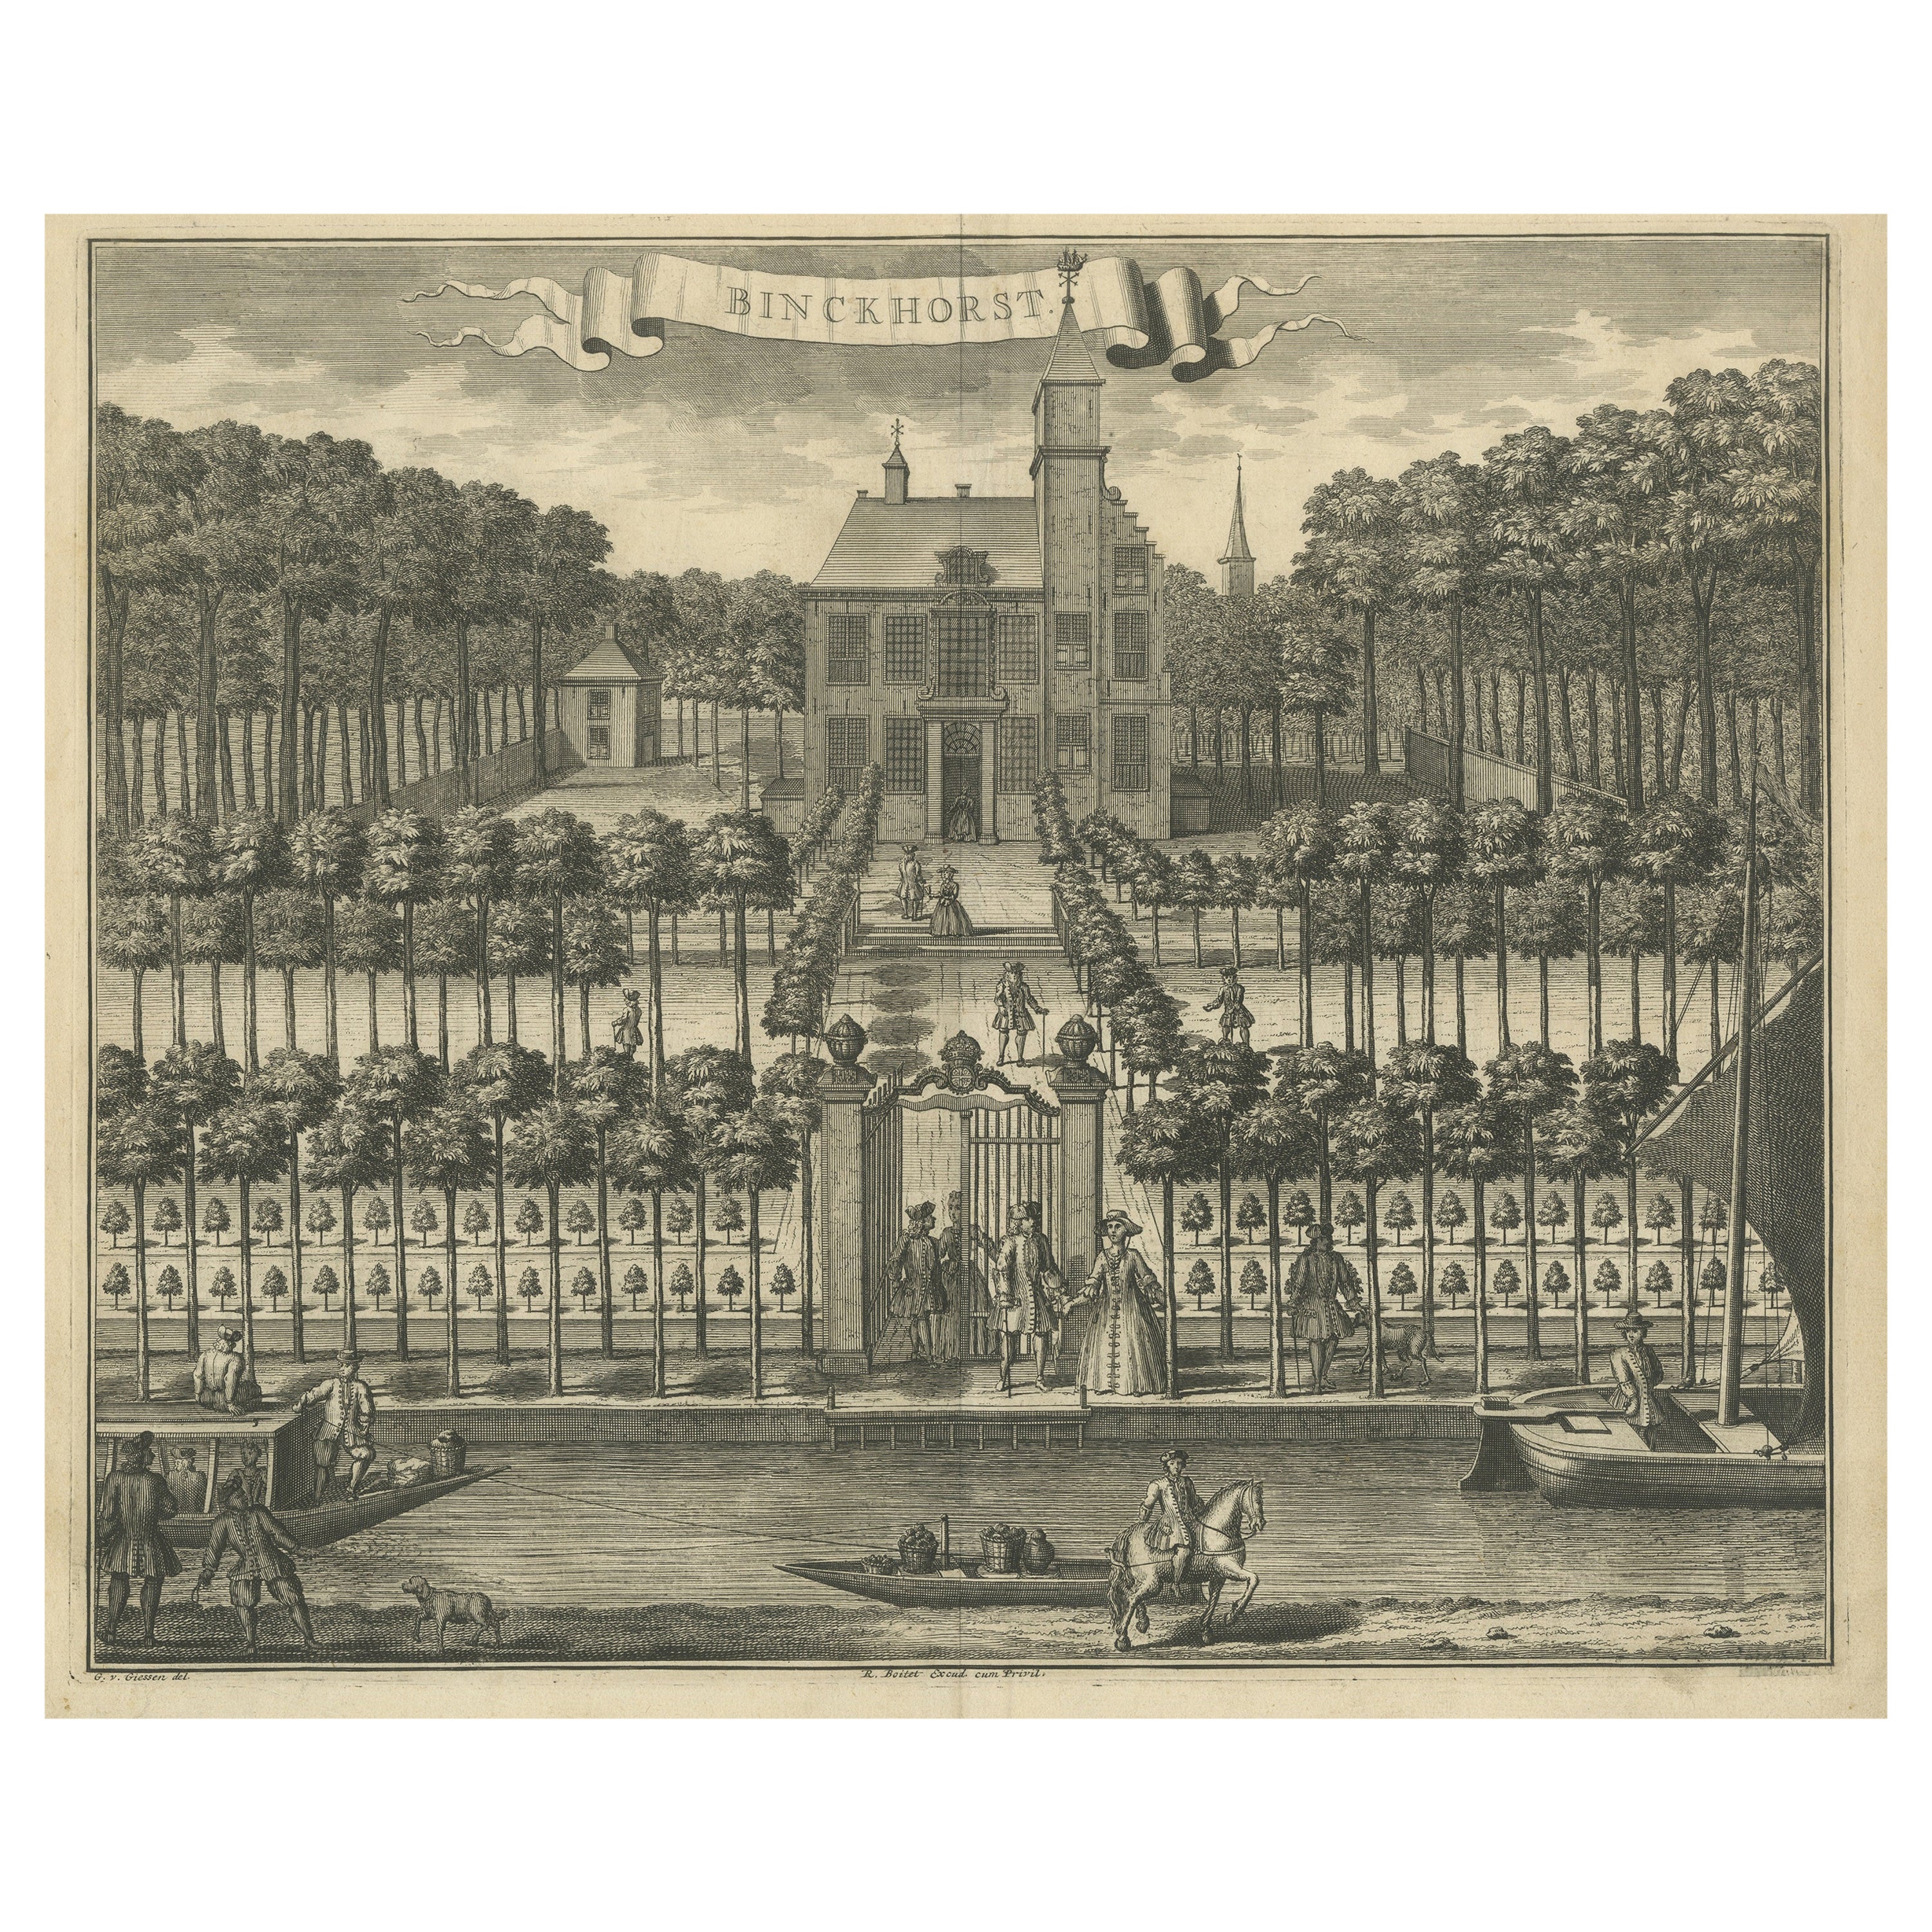 Impression ancienne du château de Binckhorst, La Haye